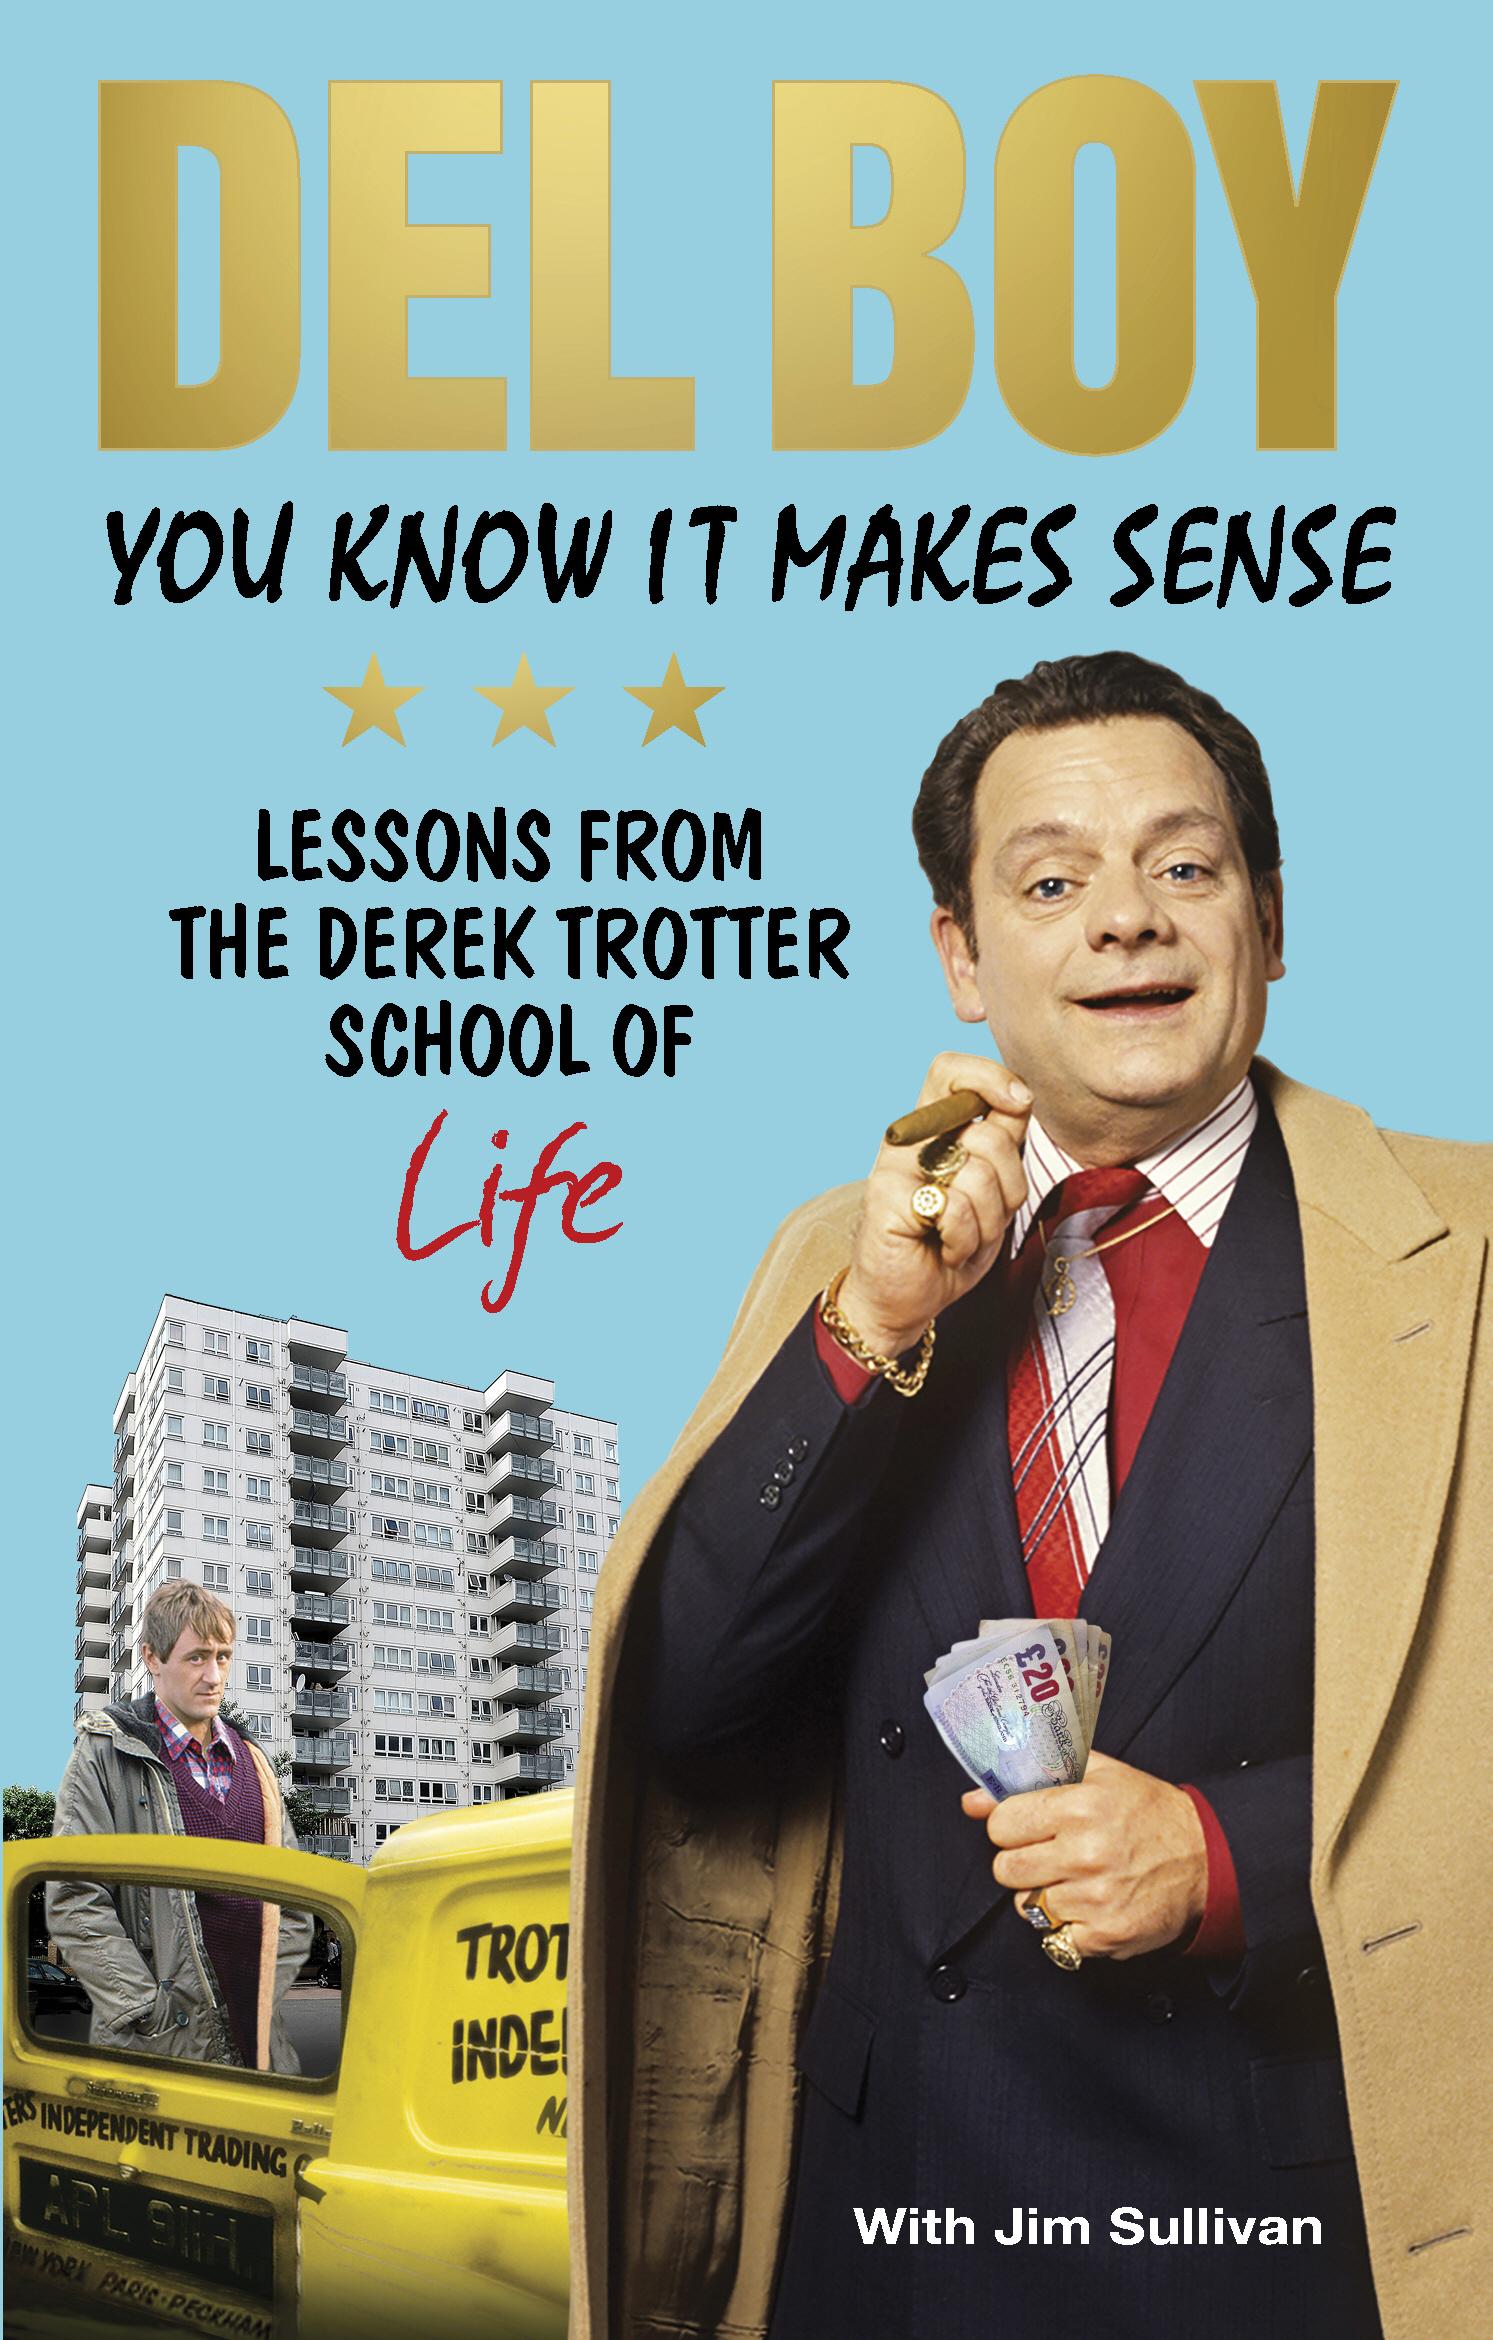 You Know it Makes Sense - Derek Del Boy Trotter